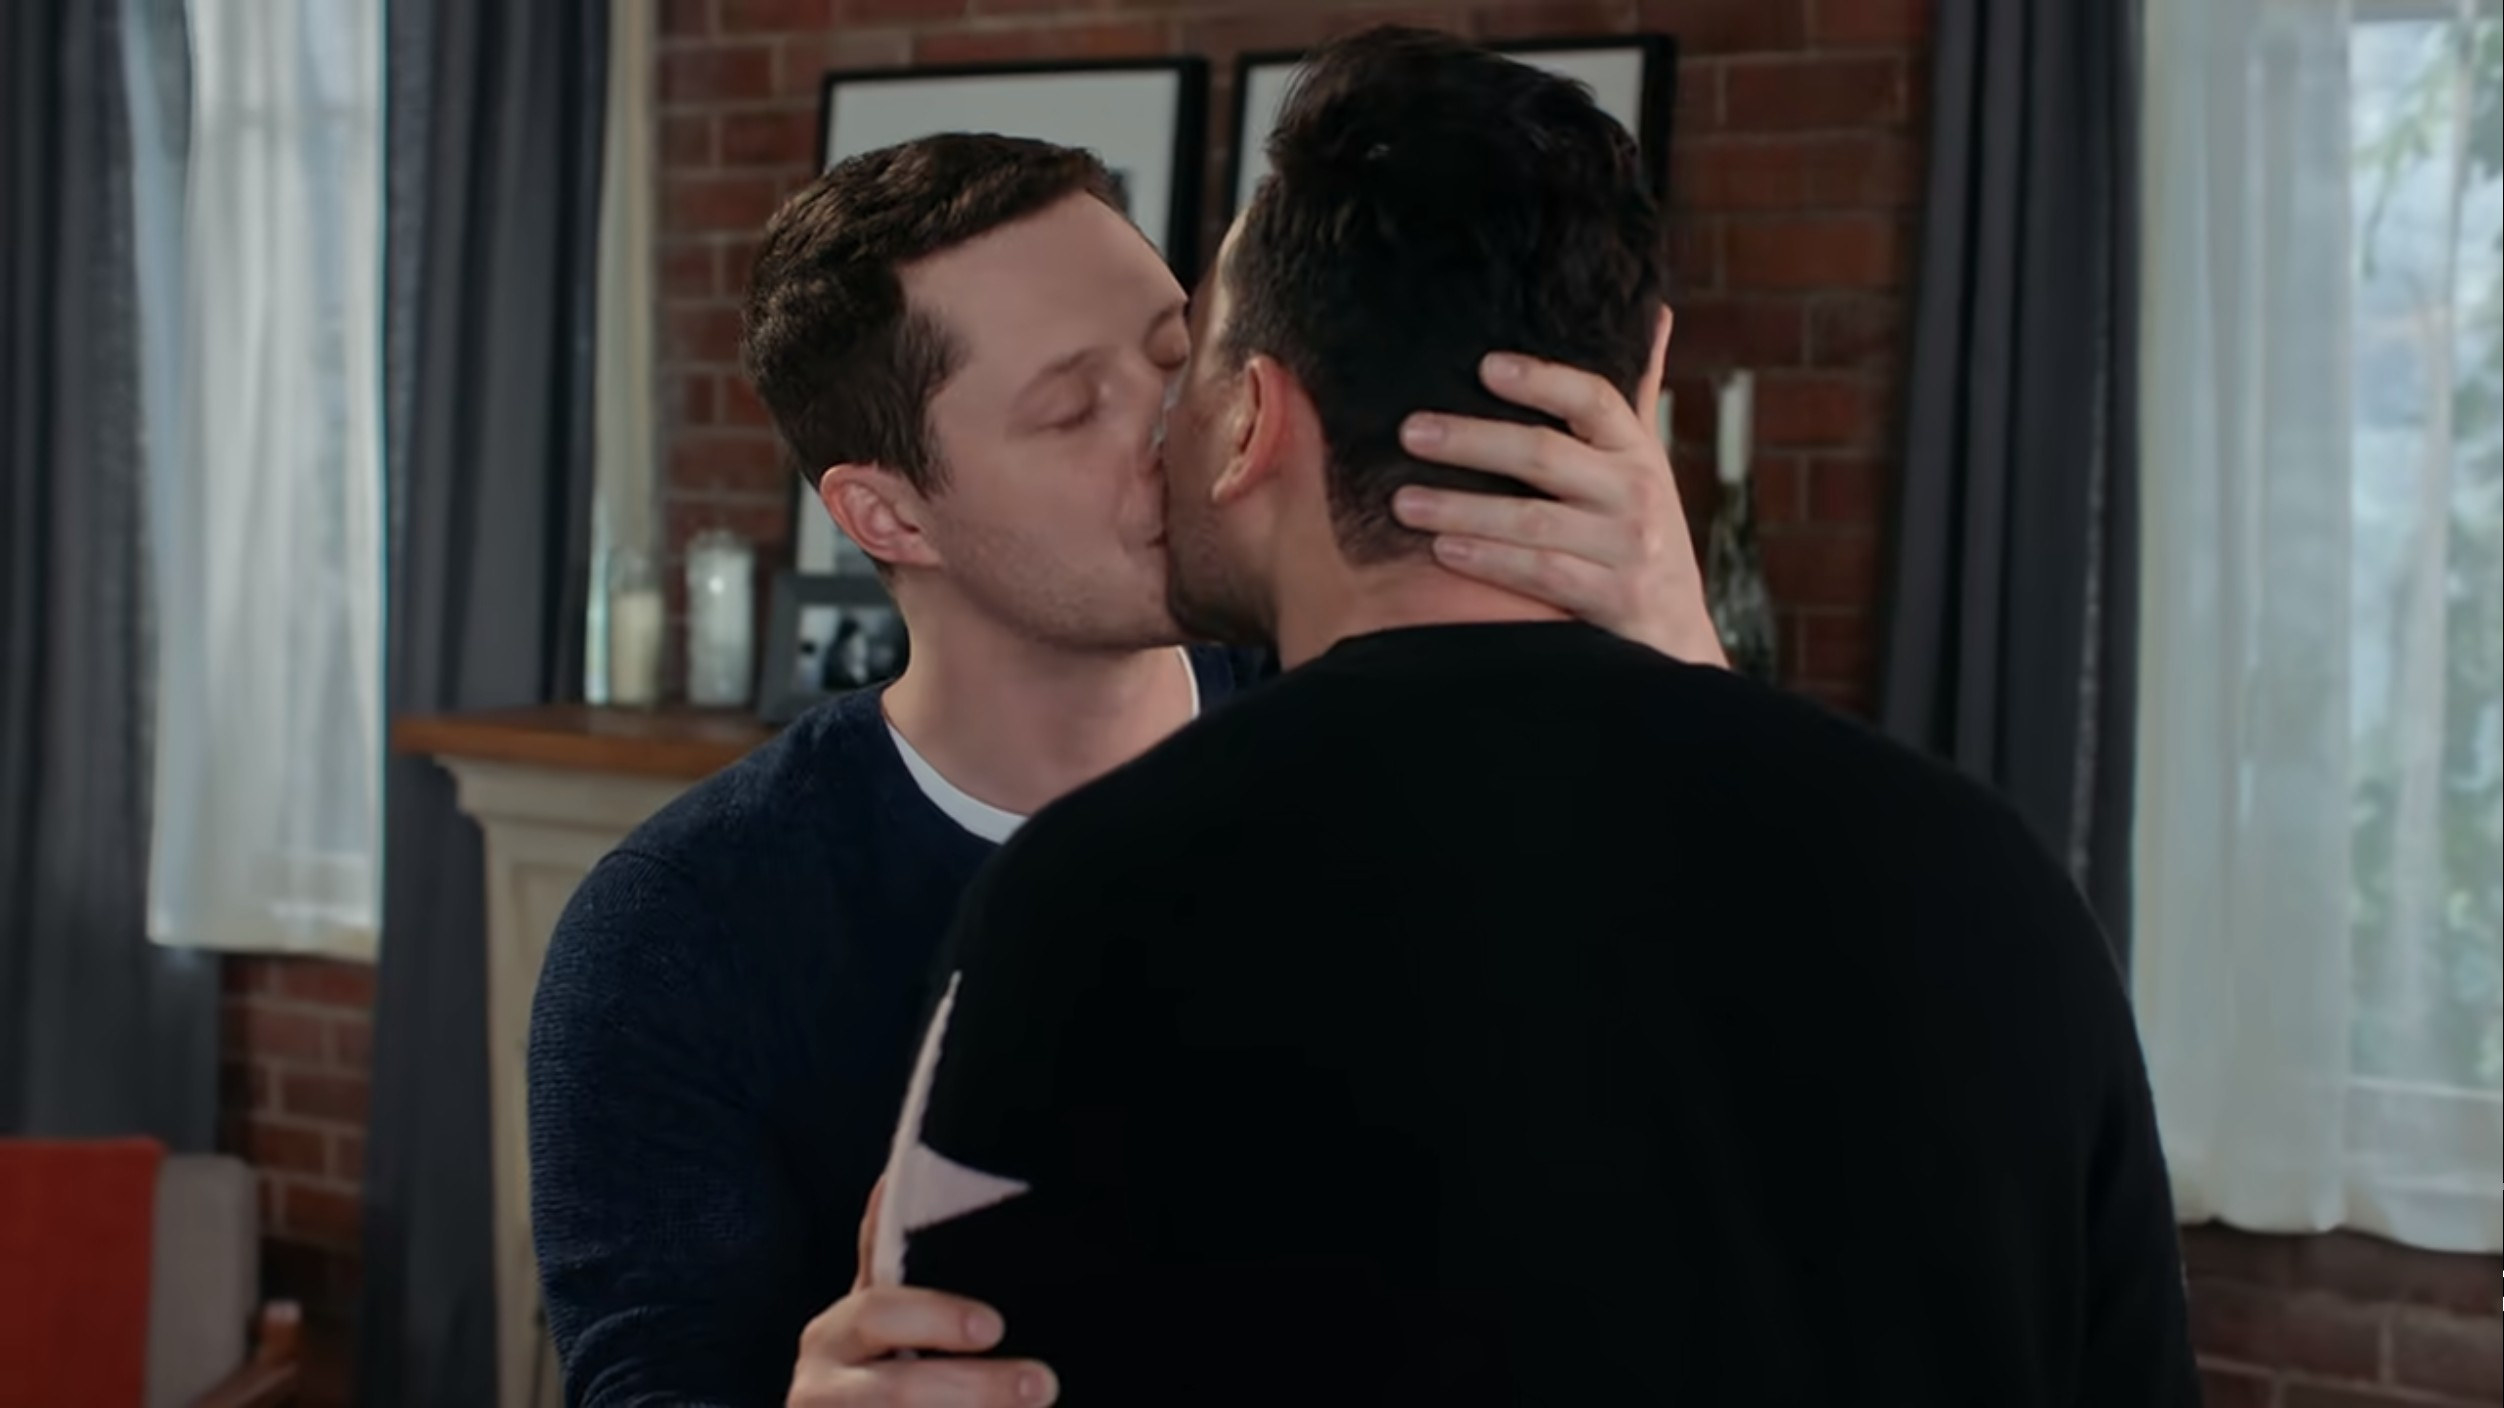 Patrick and David kissing